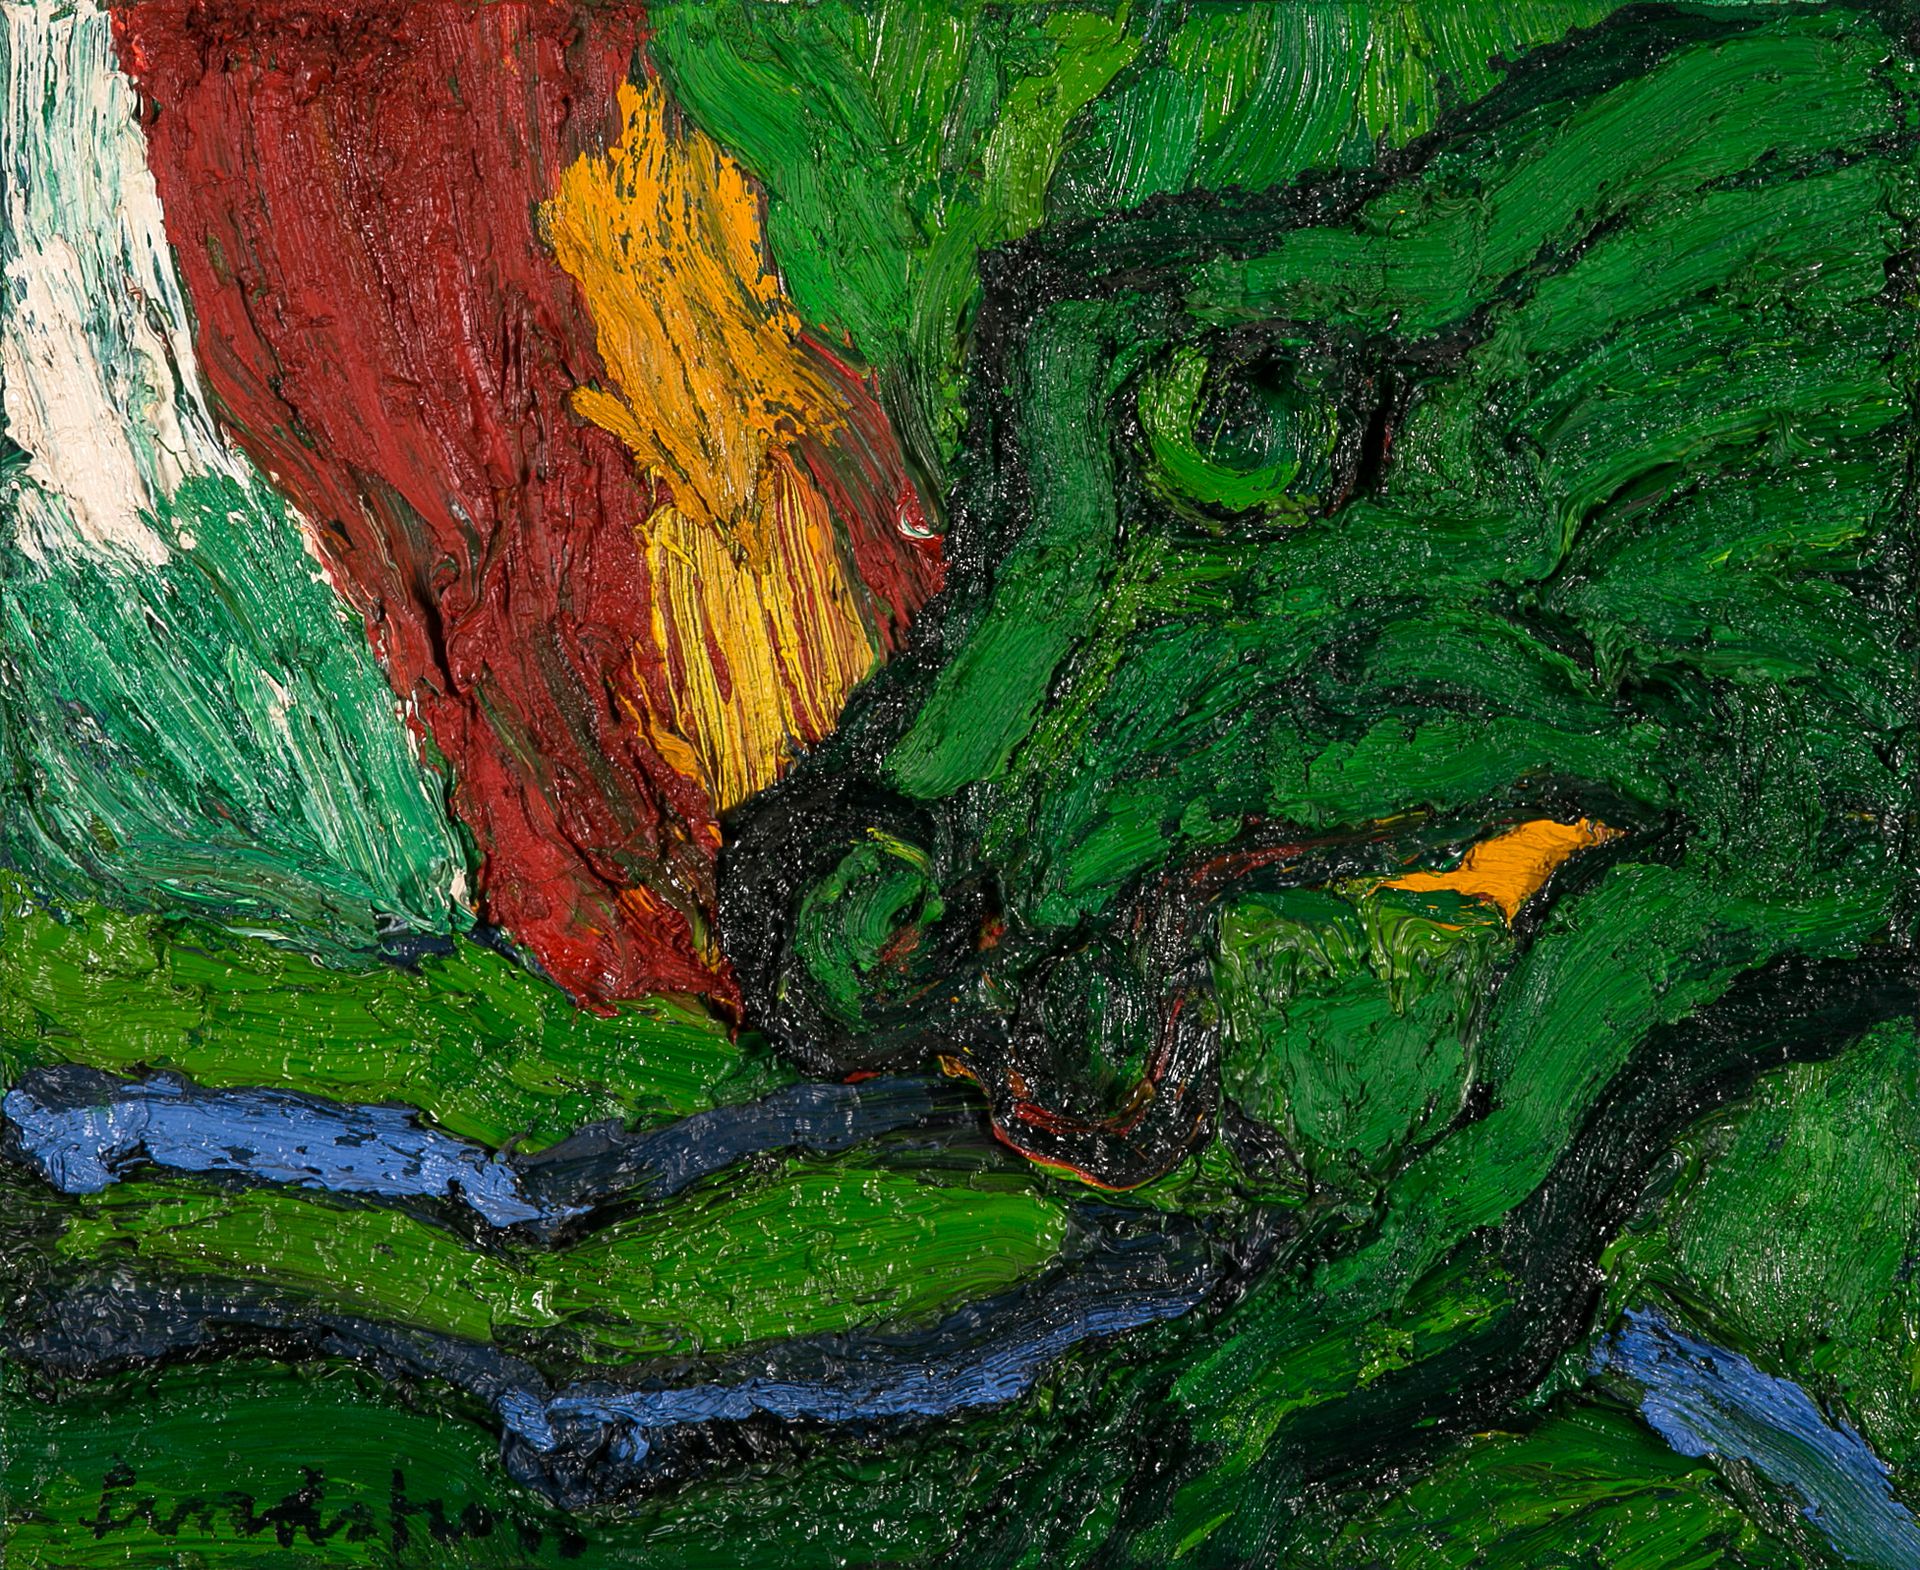 Bengt Lindström (1925-2008) 
夜曲》，1988年

布面油画，左下角有签名

布面油画，左下角有签名

50.1 x 61.5厘米
&hellip;